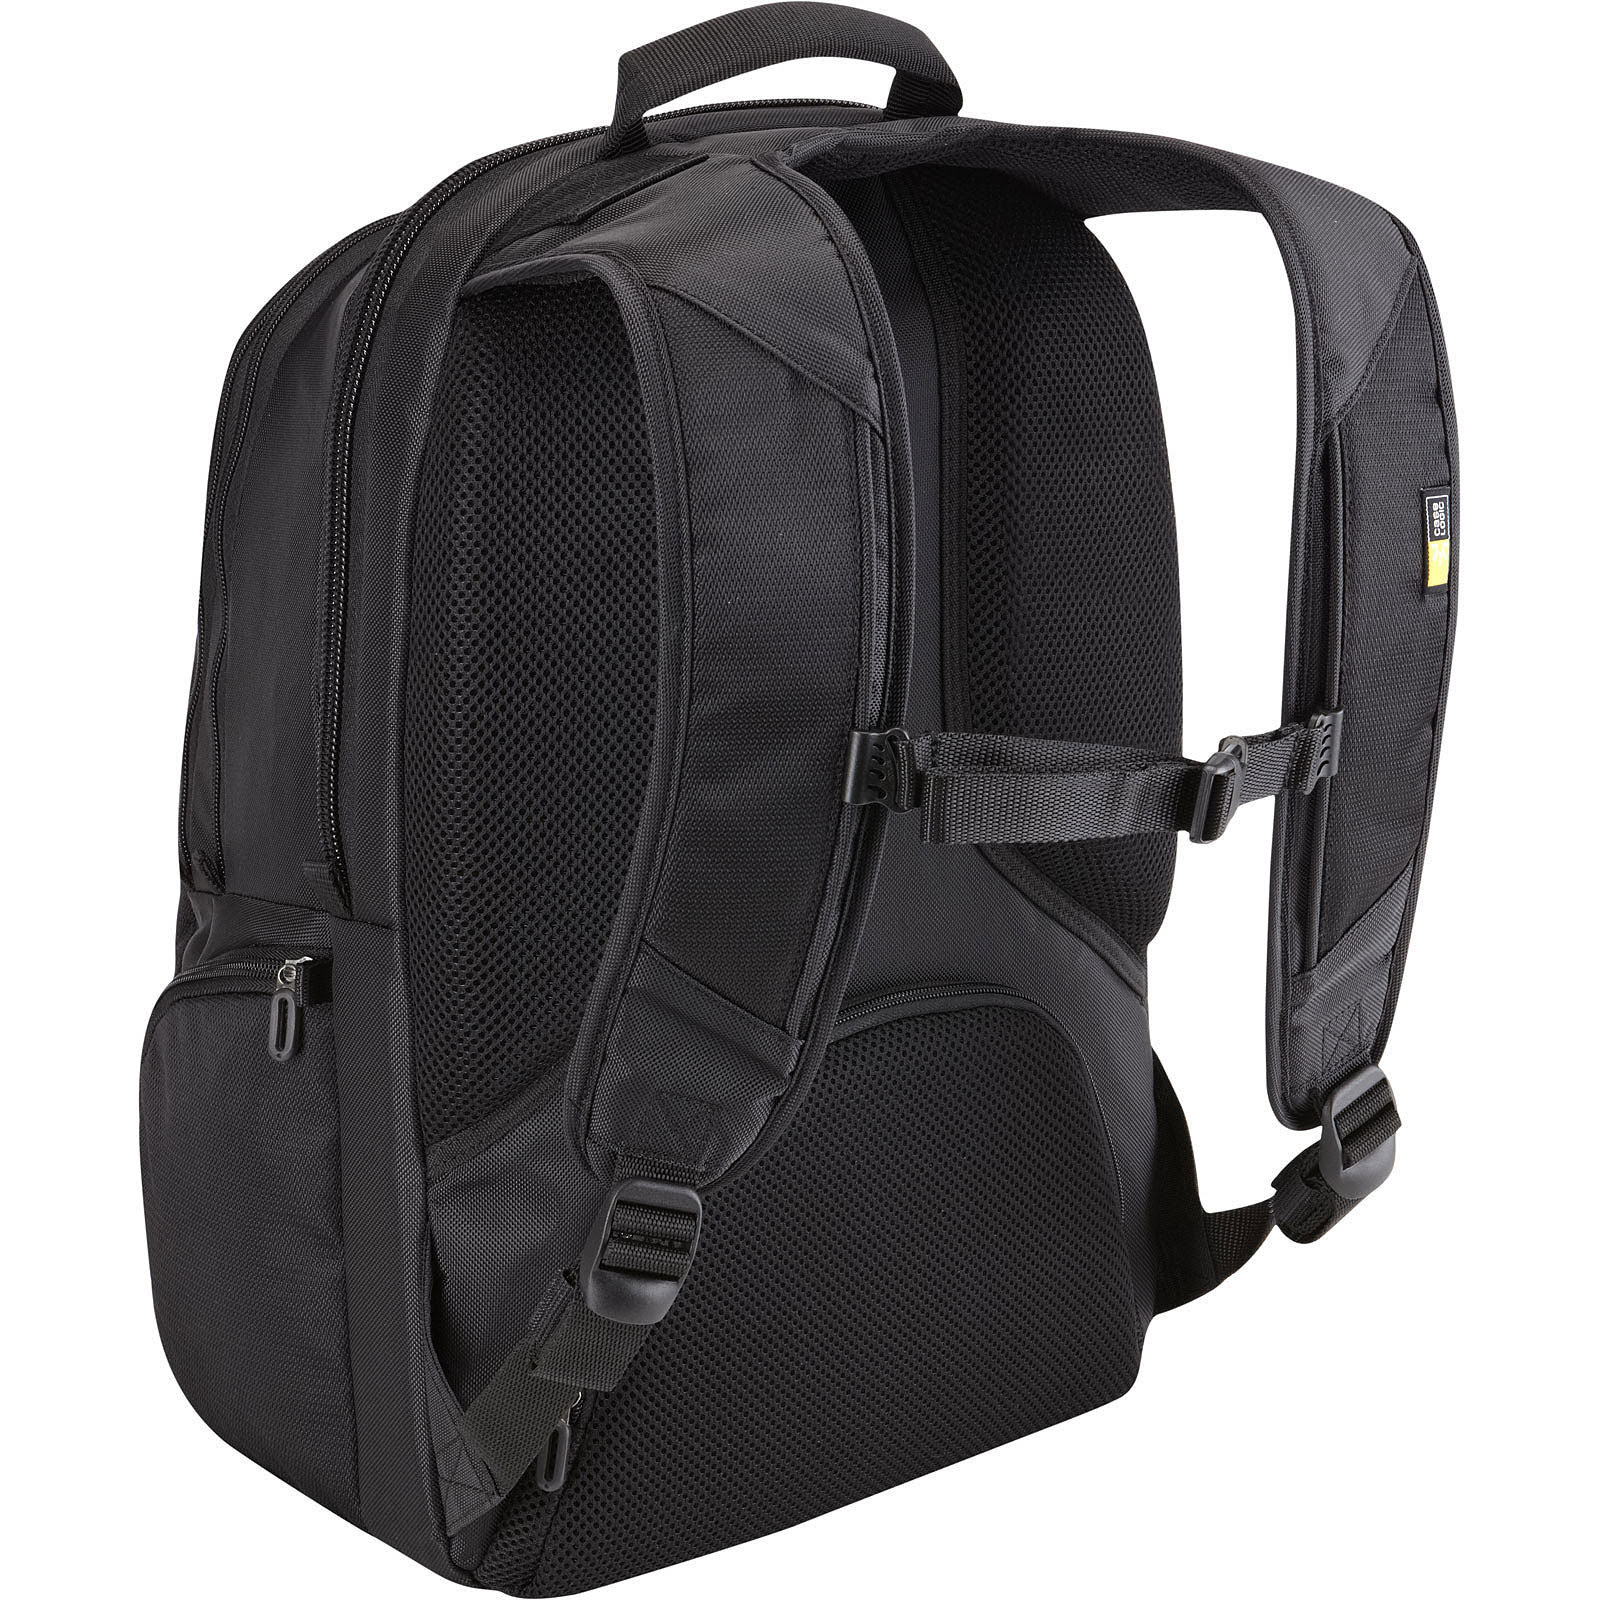 17.3" Laptop Backpack RBP217 - Achat / Vente sur grosbill-pro.com - 4